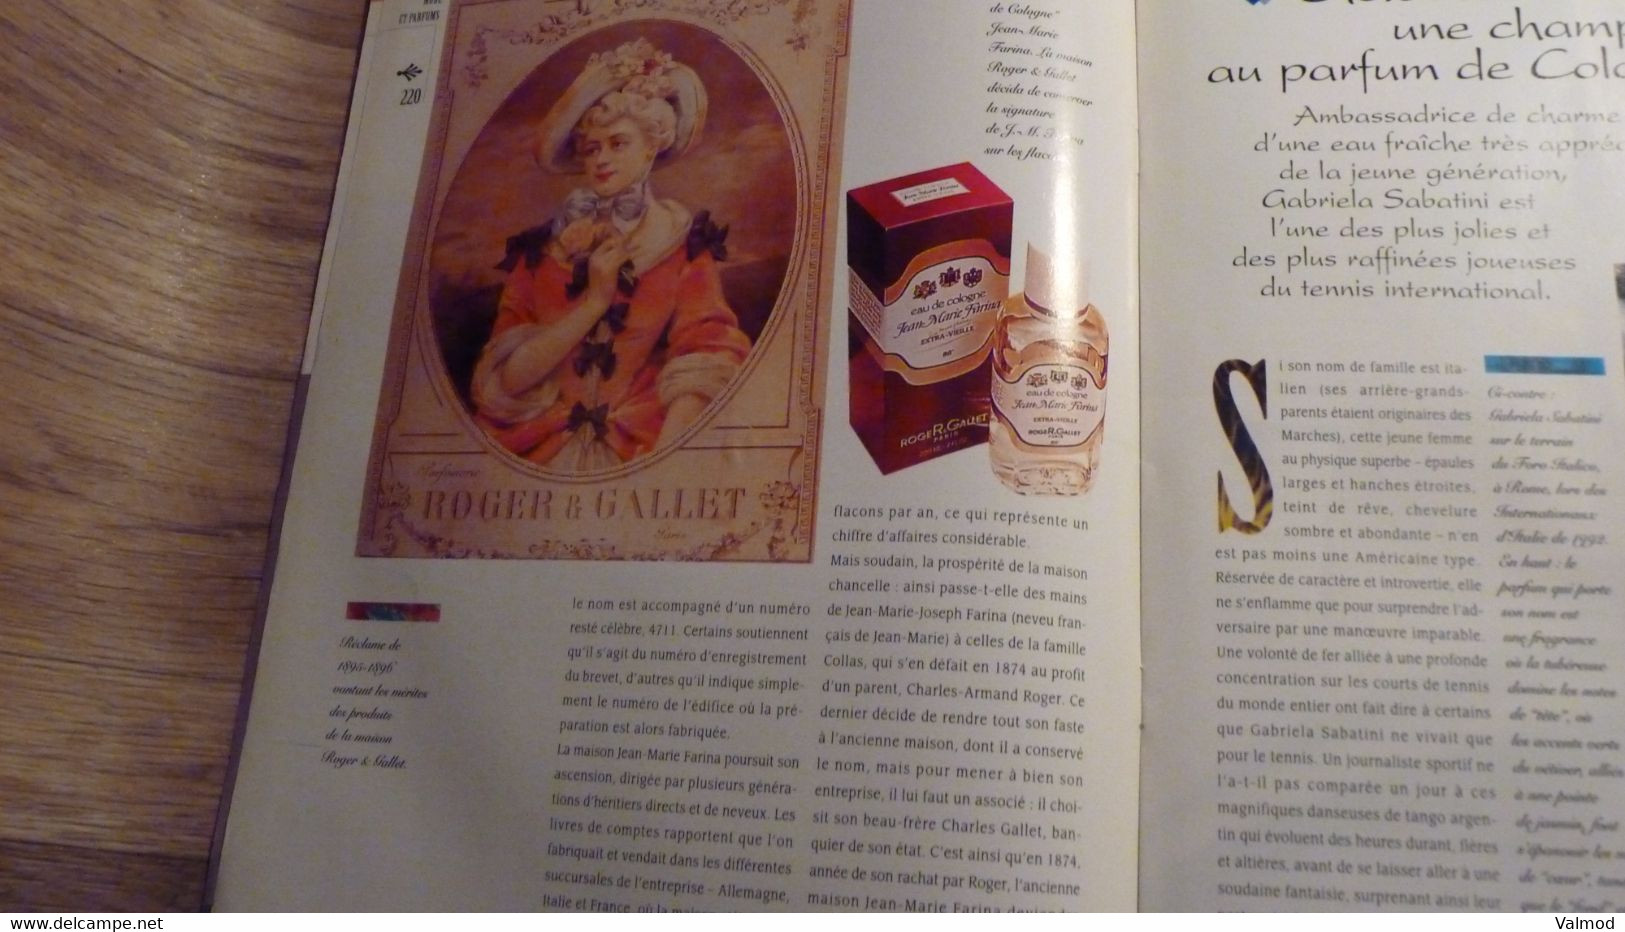 Magazine "Parfums De Rêve" N° 19 -  Azzaro - "Oh La La" - Editions Atlas - Revistas